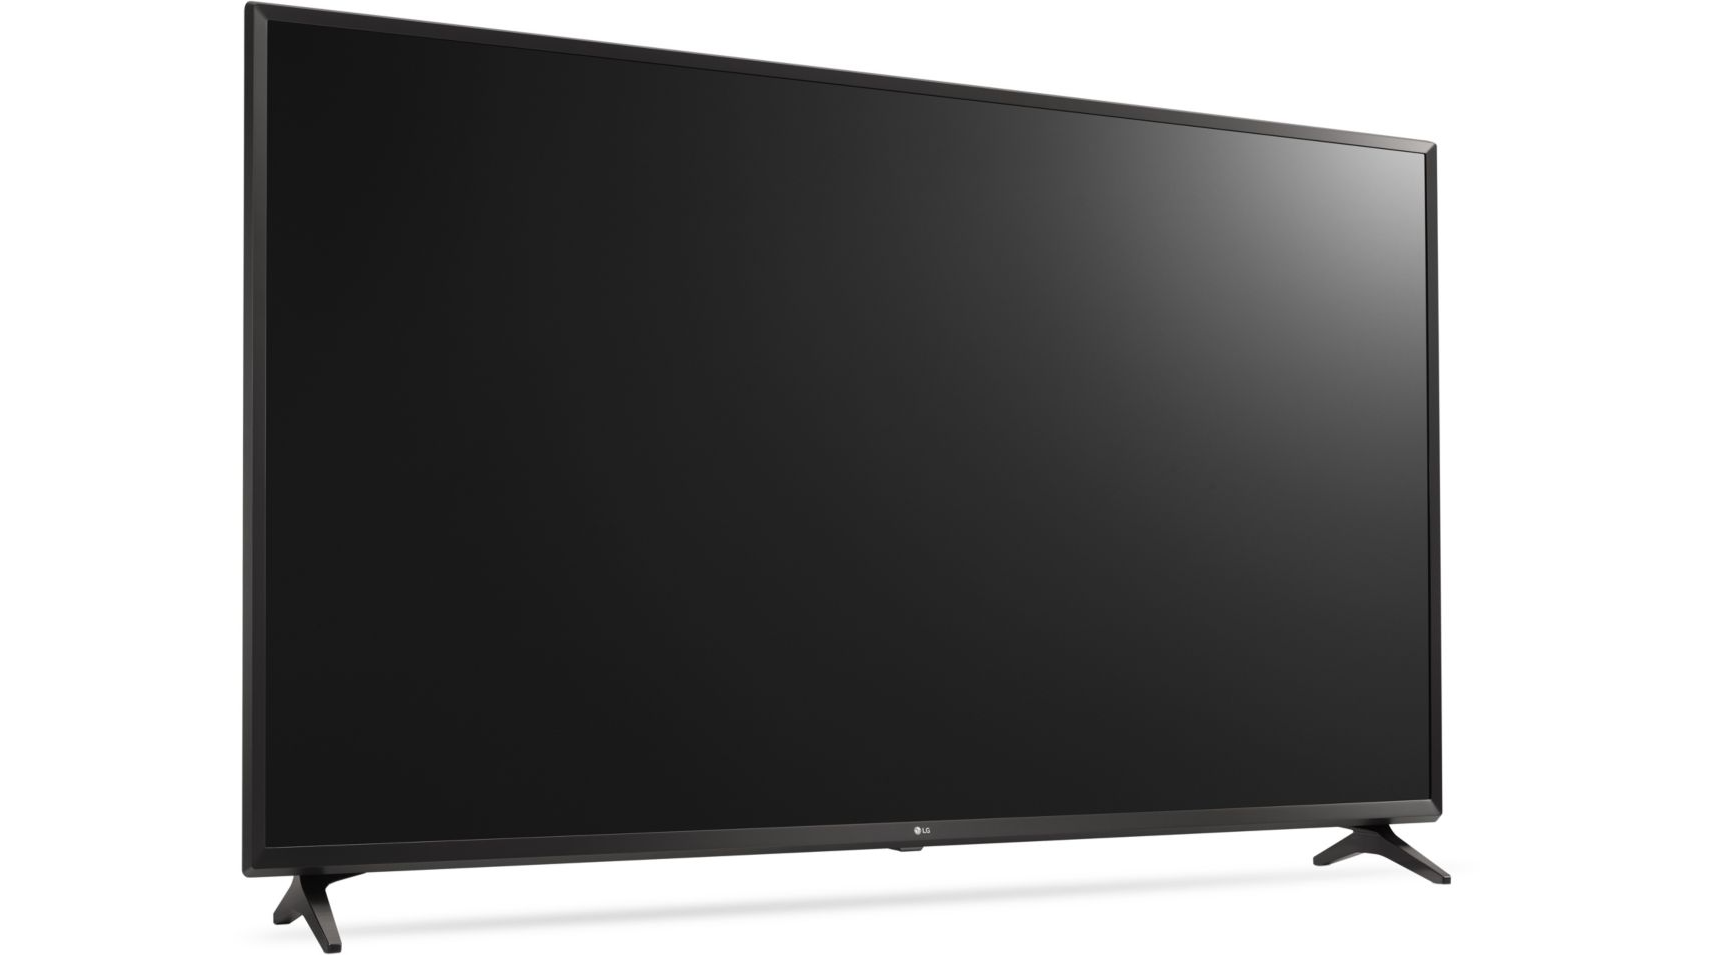 Ecran TV LED UHD 4K HDR 138cm 55 pouces